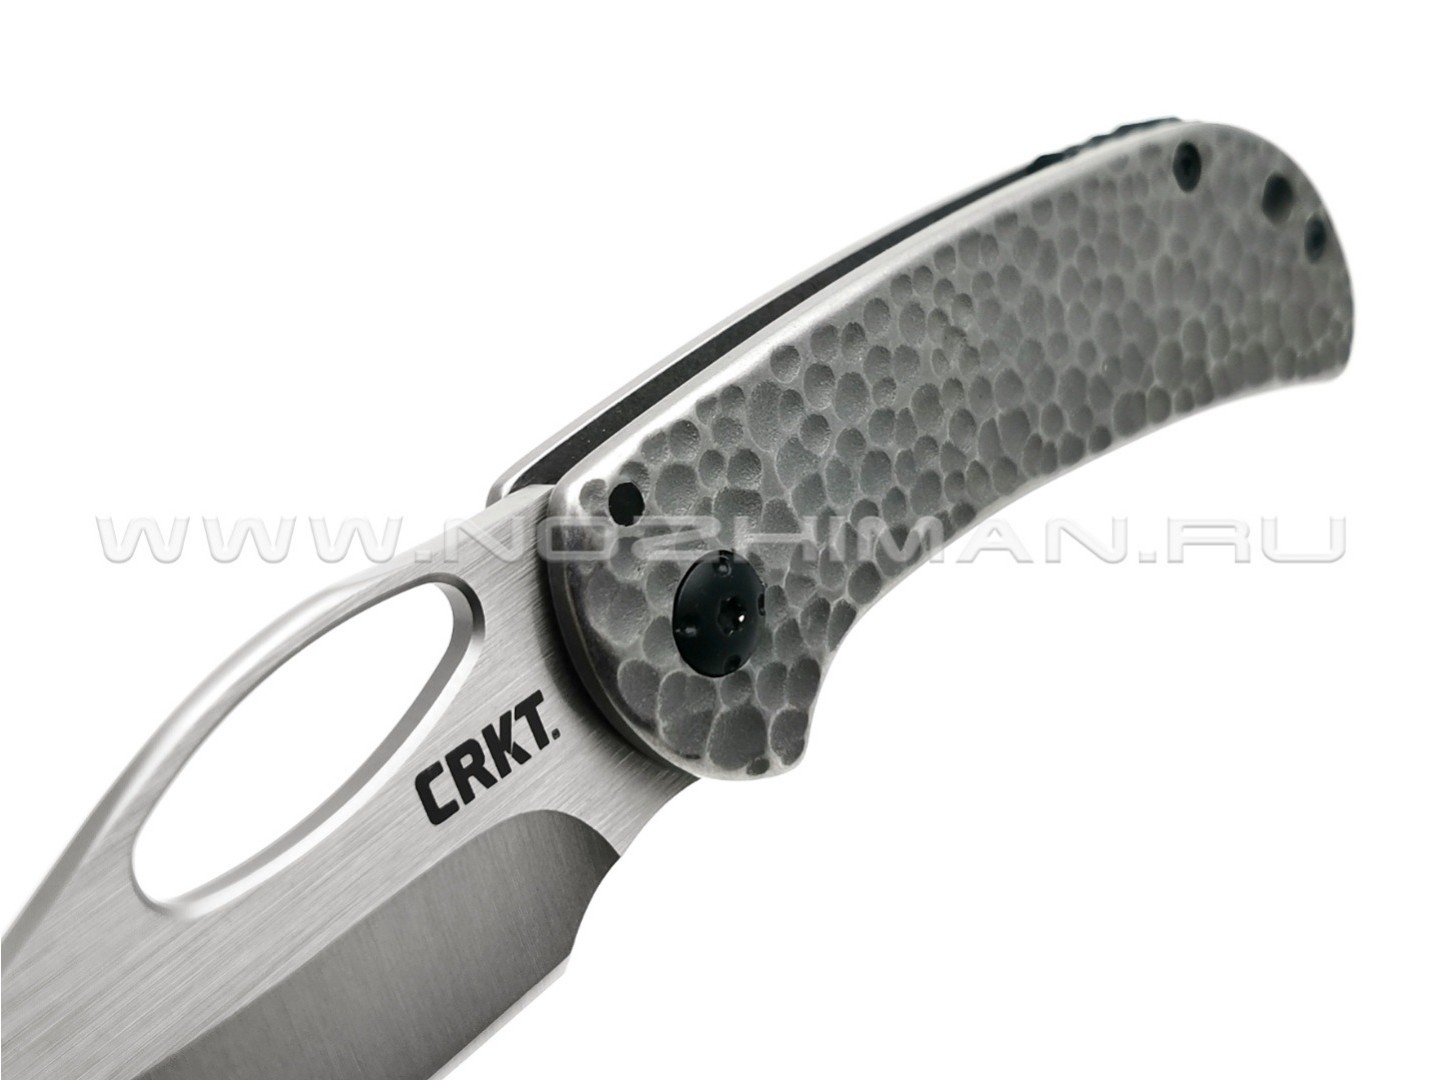 Нож CRKT Chehalem 6540 сталь 8Cr13MoV рукоять Stainless steel